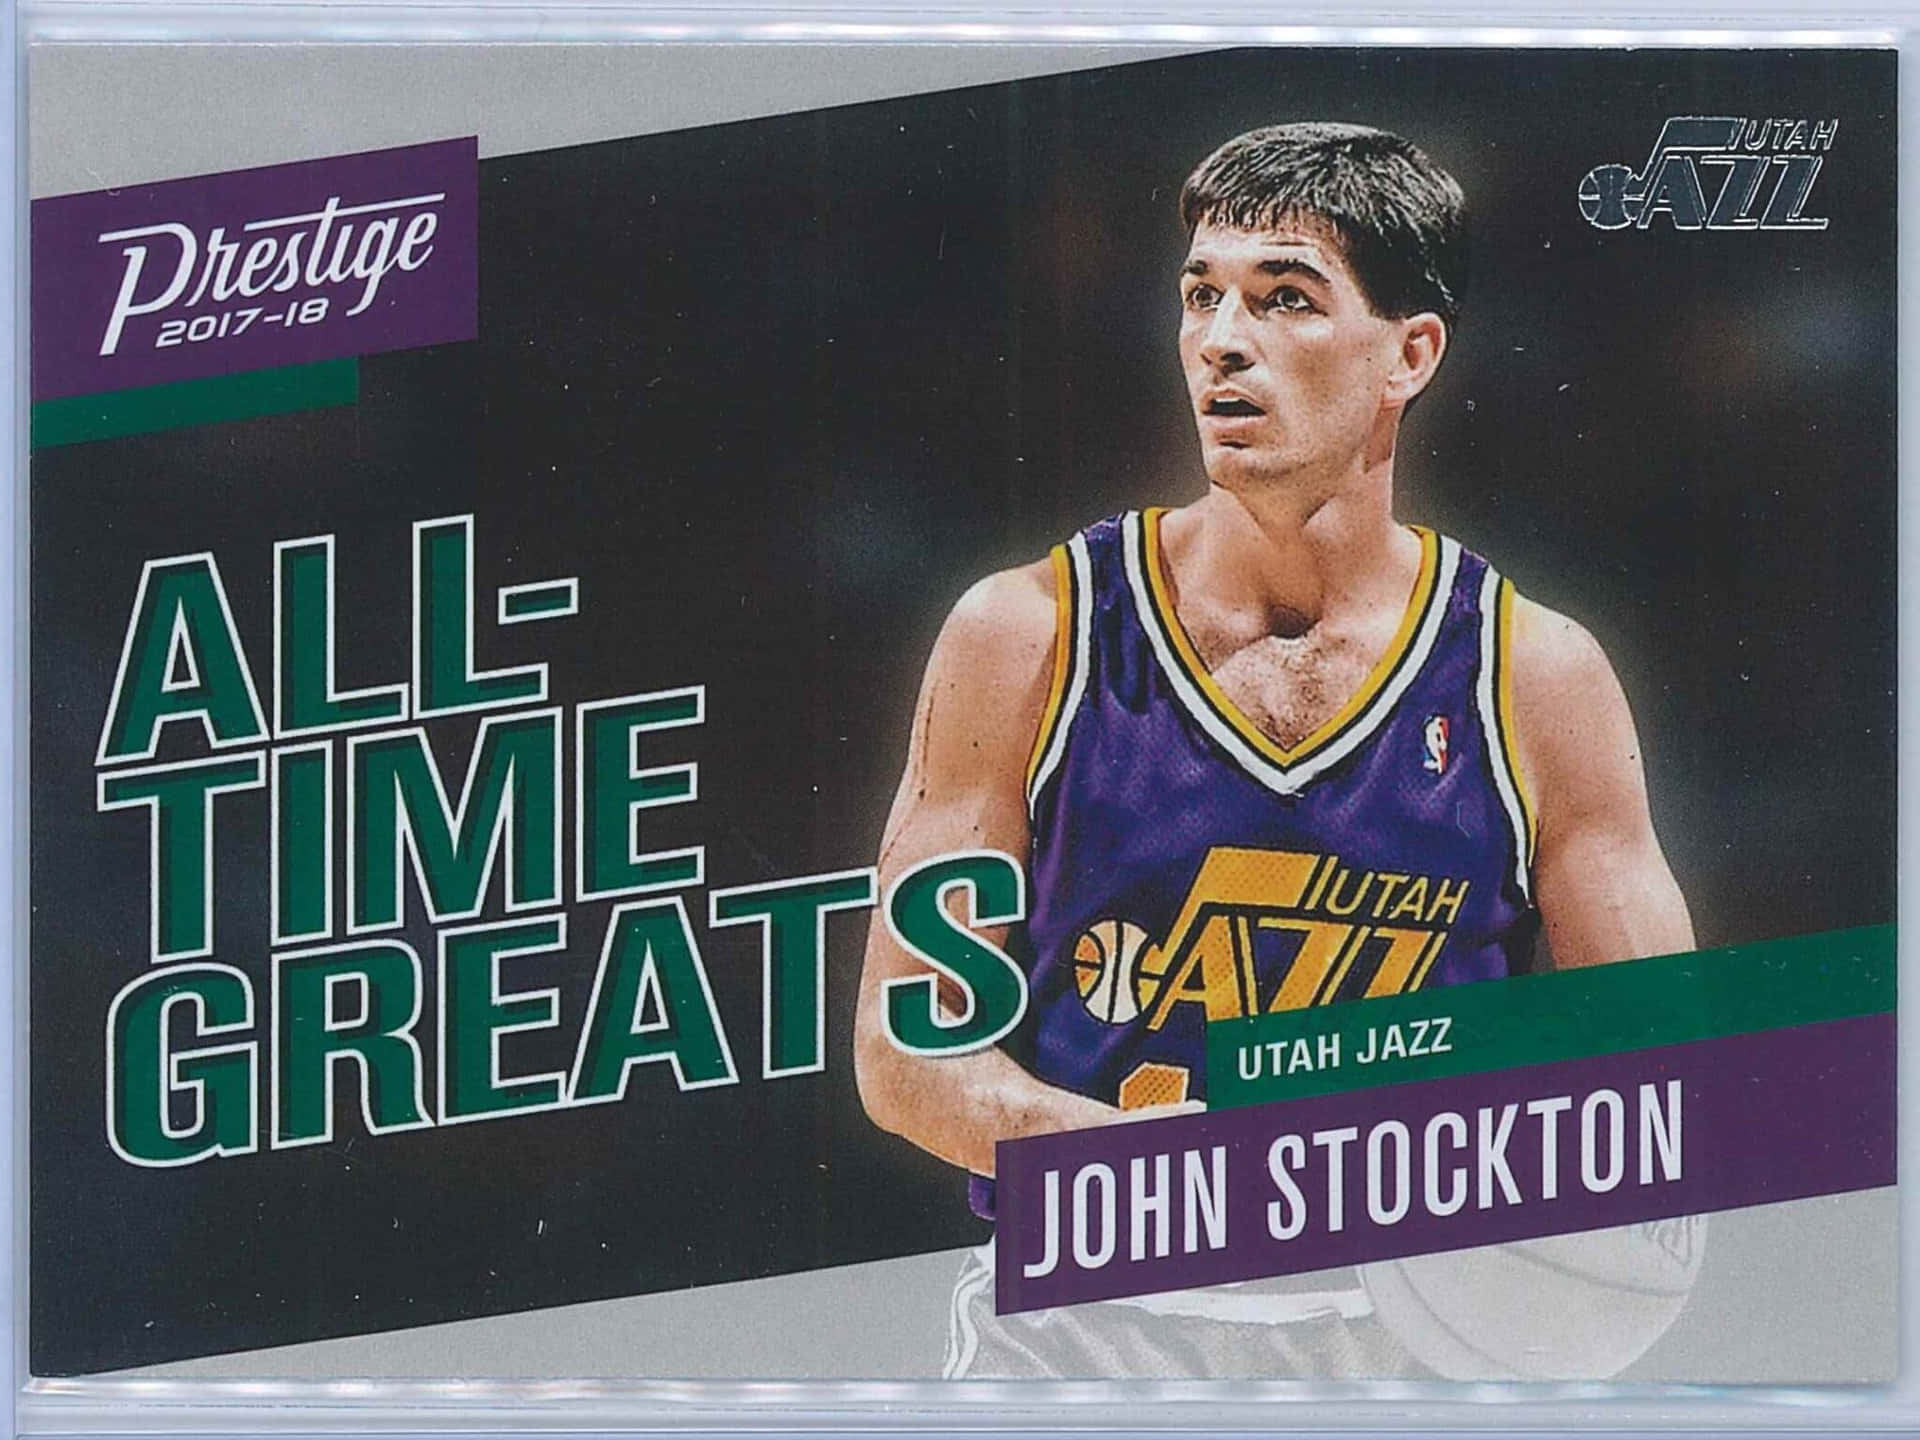 Legends profile: John Stockton